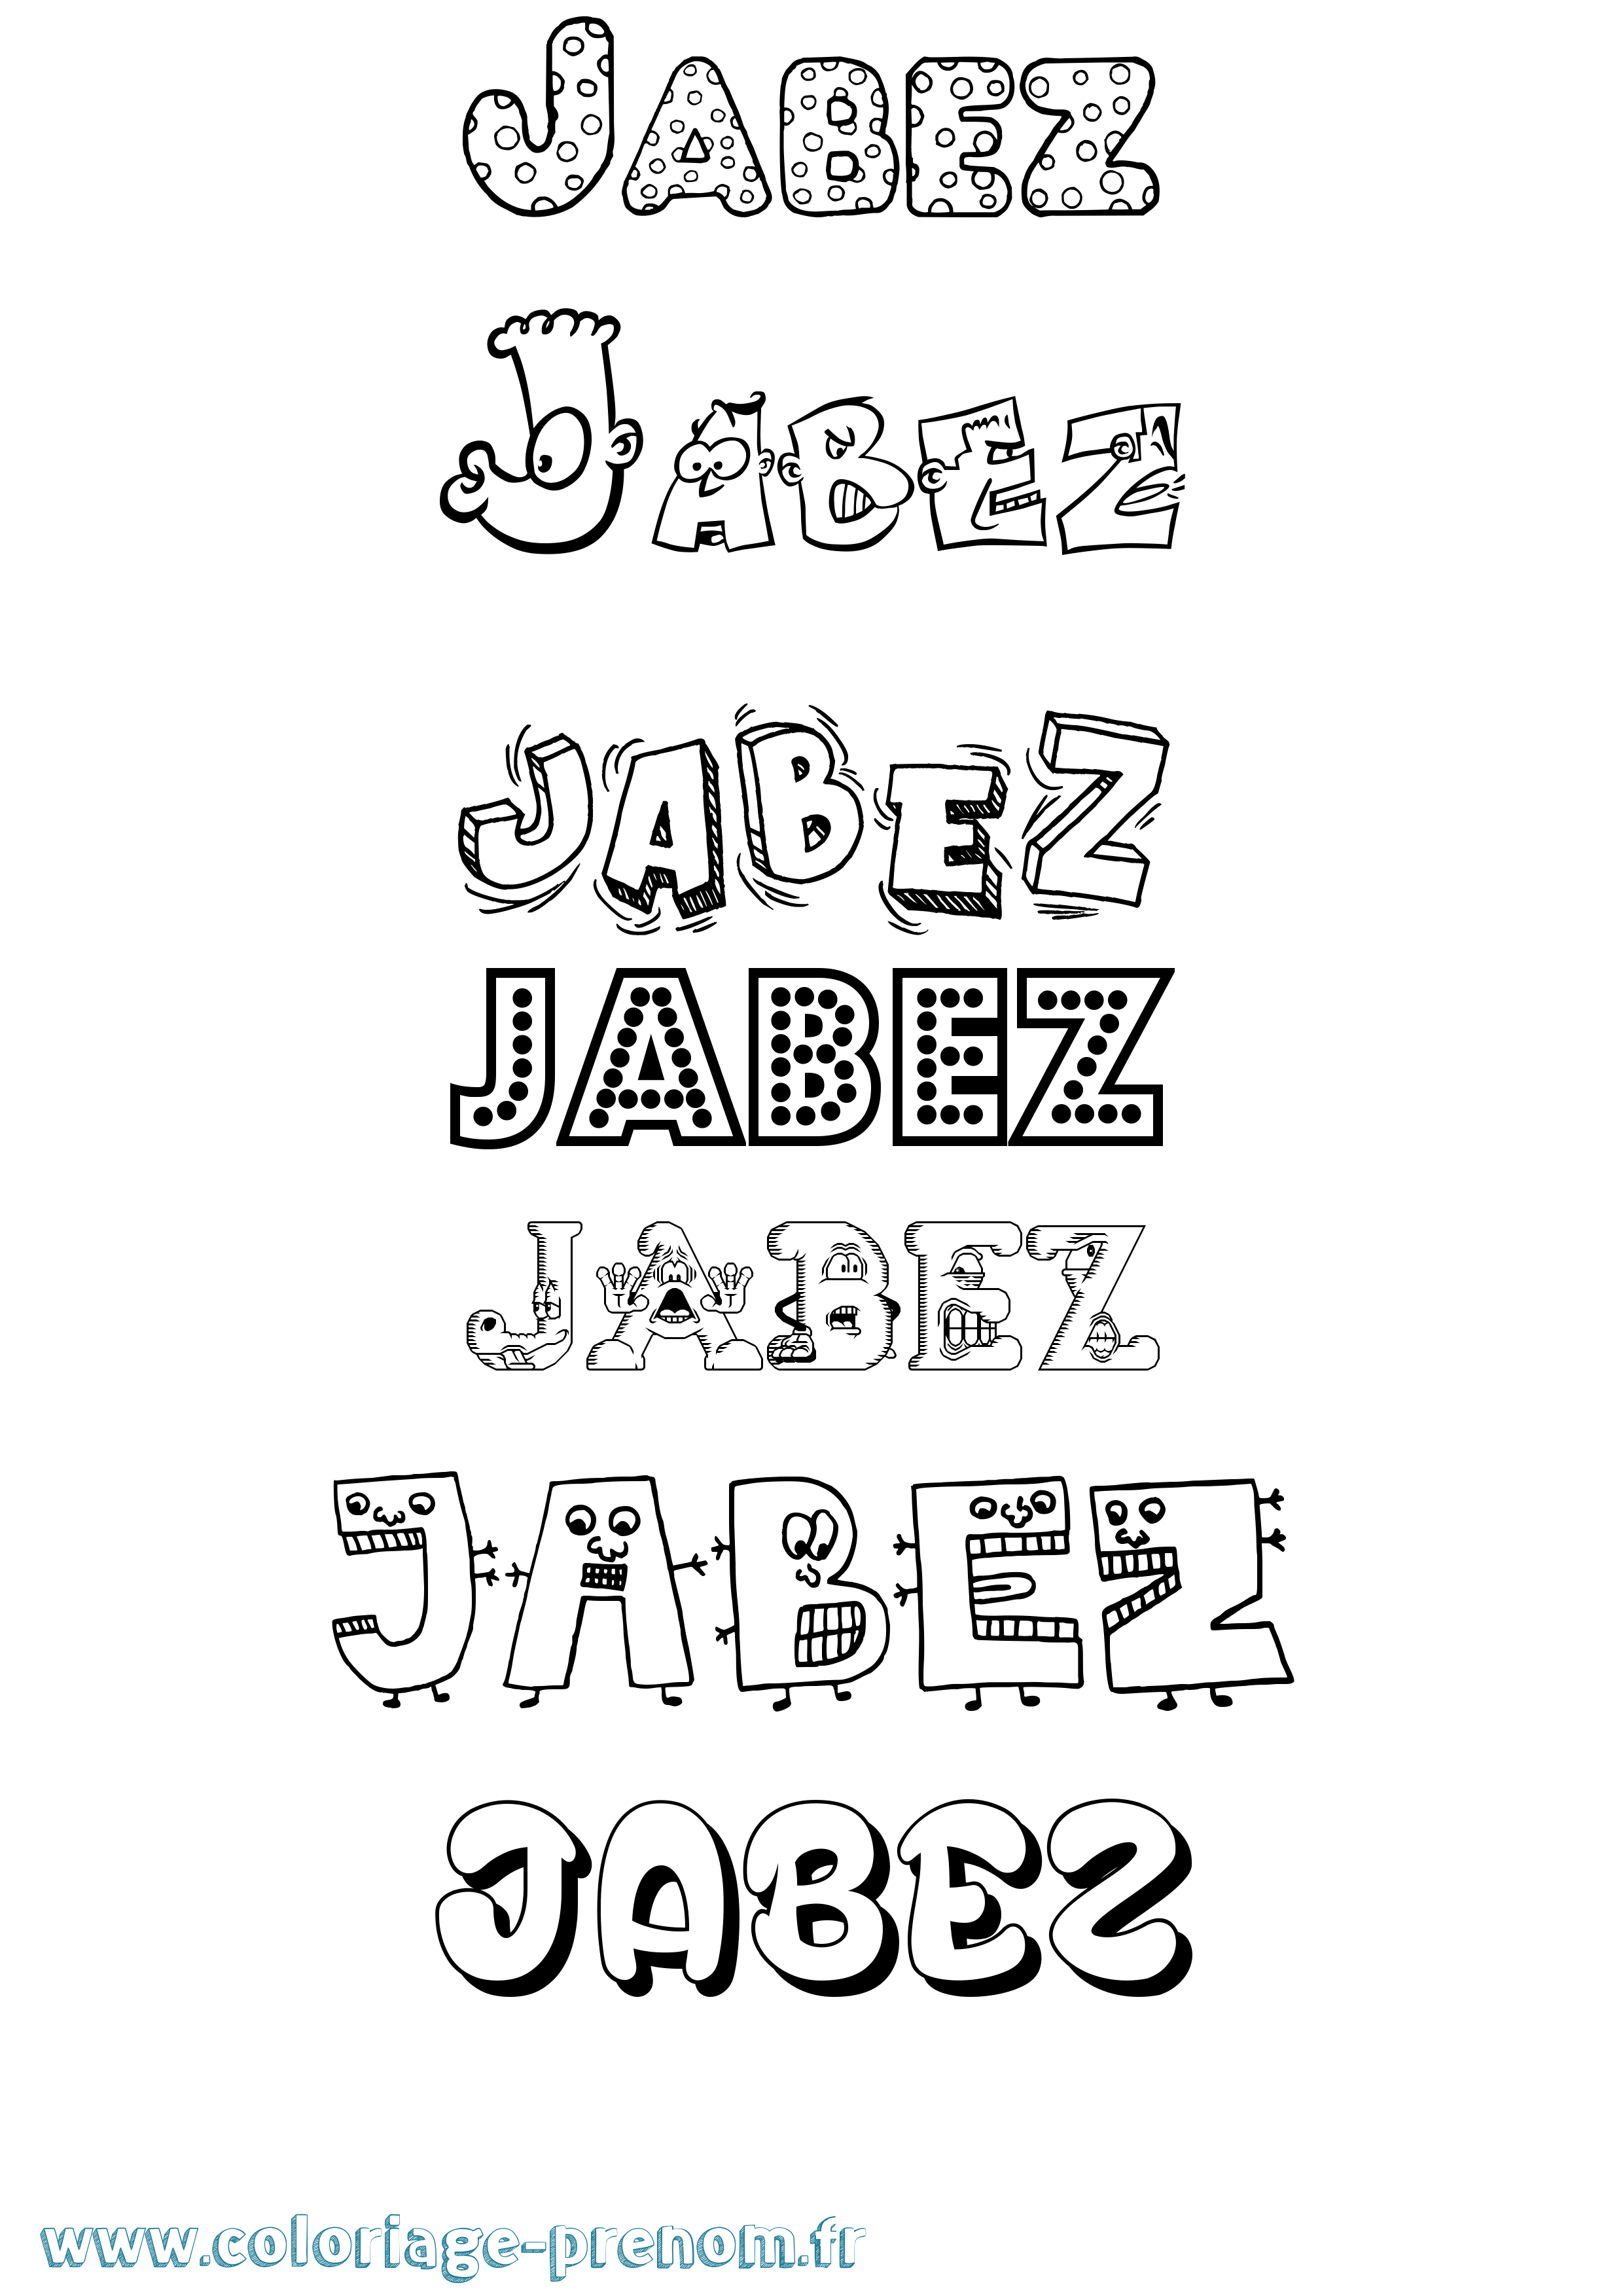 Coloriage prénom Jabez Fun